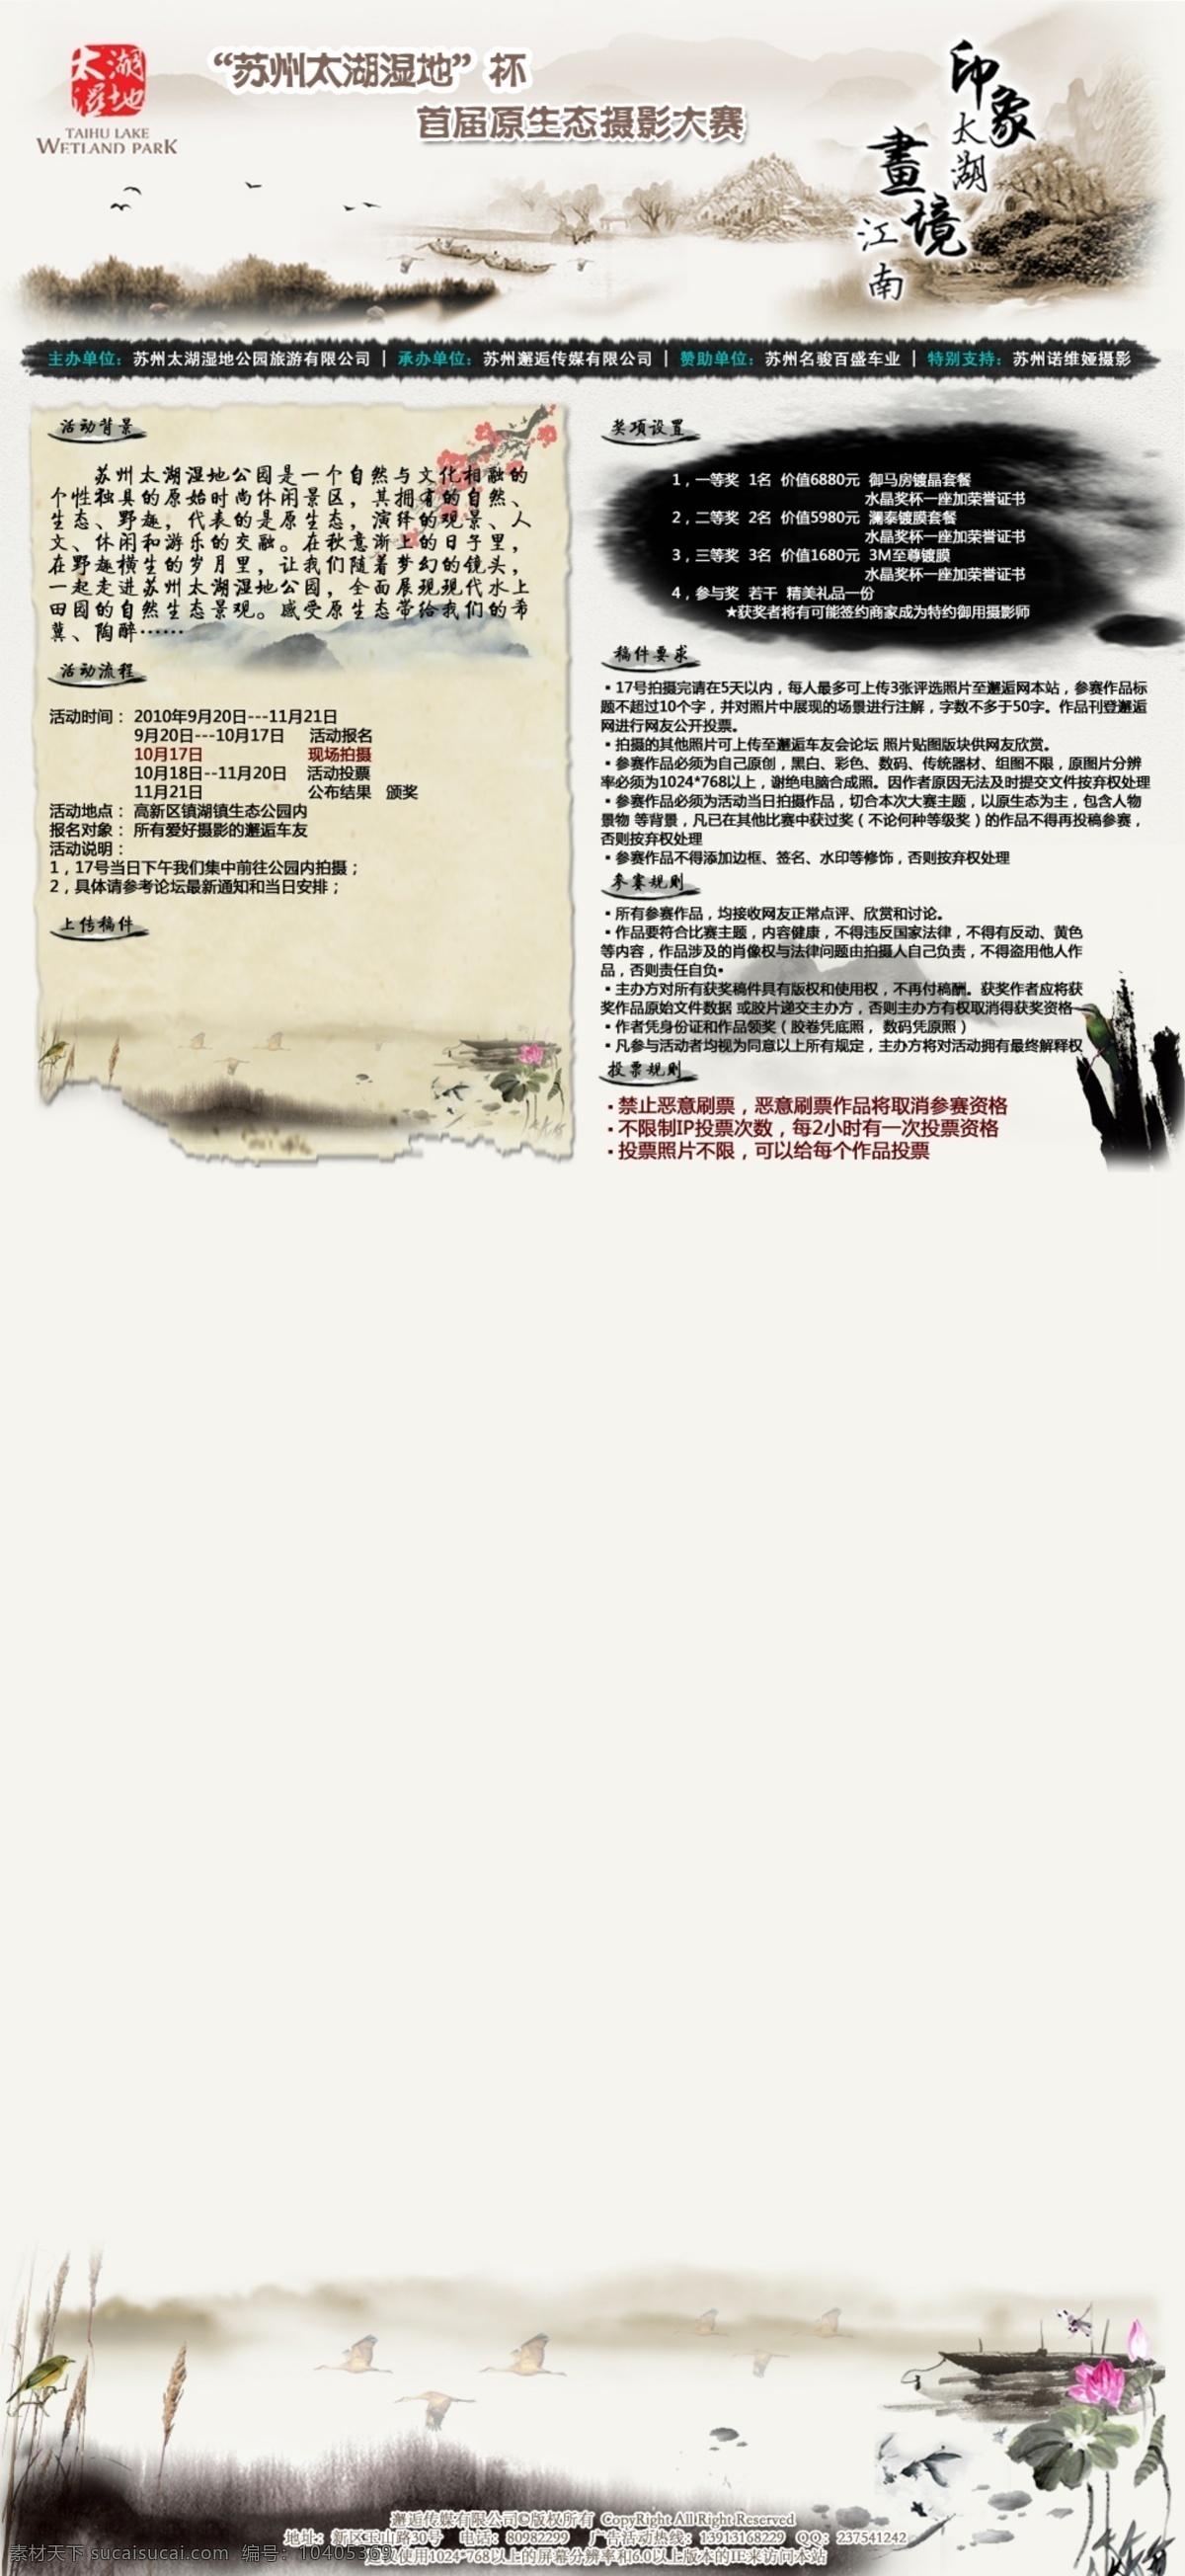 水墨 风格 投票 网页模板 评选 邂逅 源文件 中文模版 自驾游 网页素材